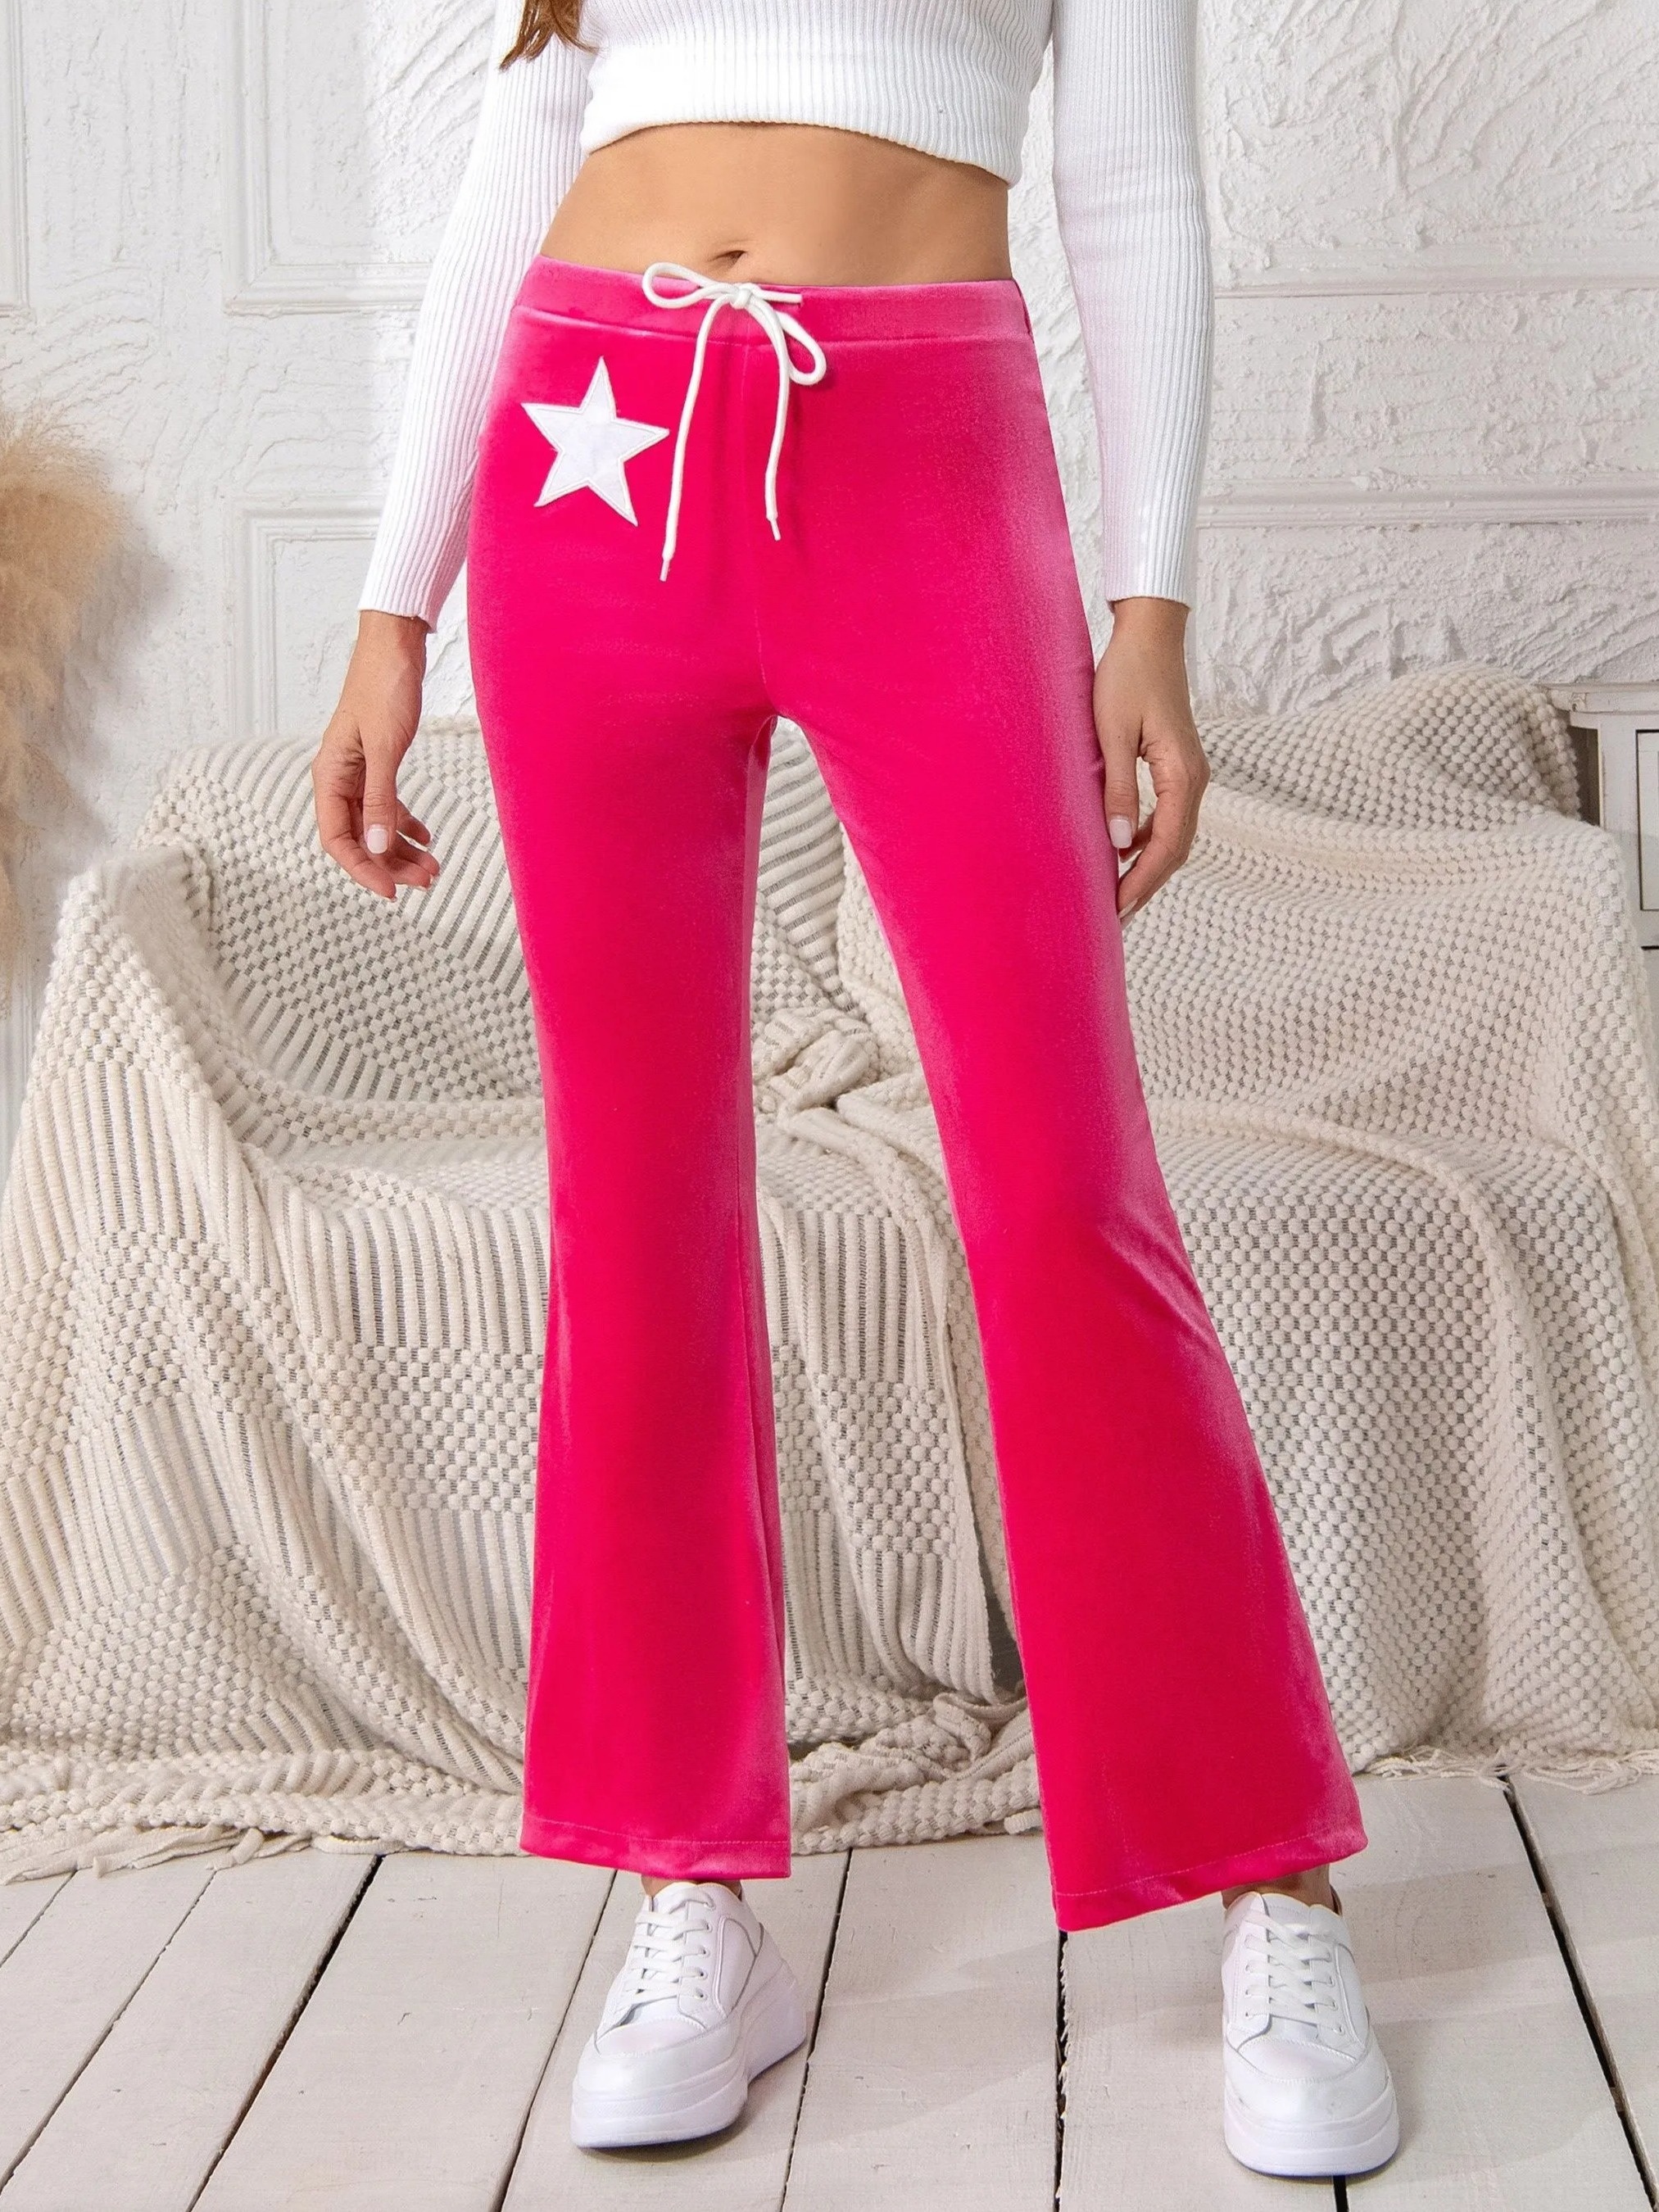 Victoria Secret Pink Sequin Leggings, Women's Fashion, Bottoms